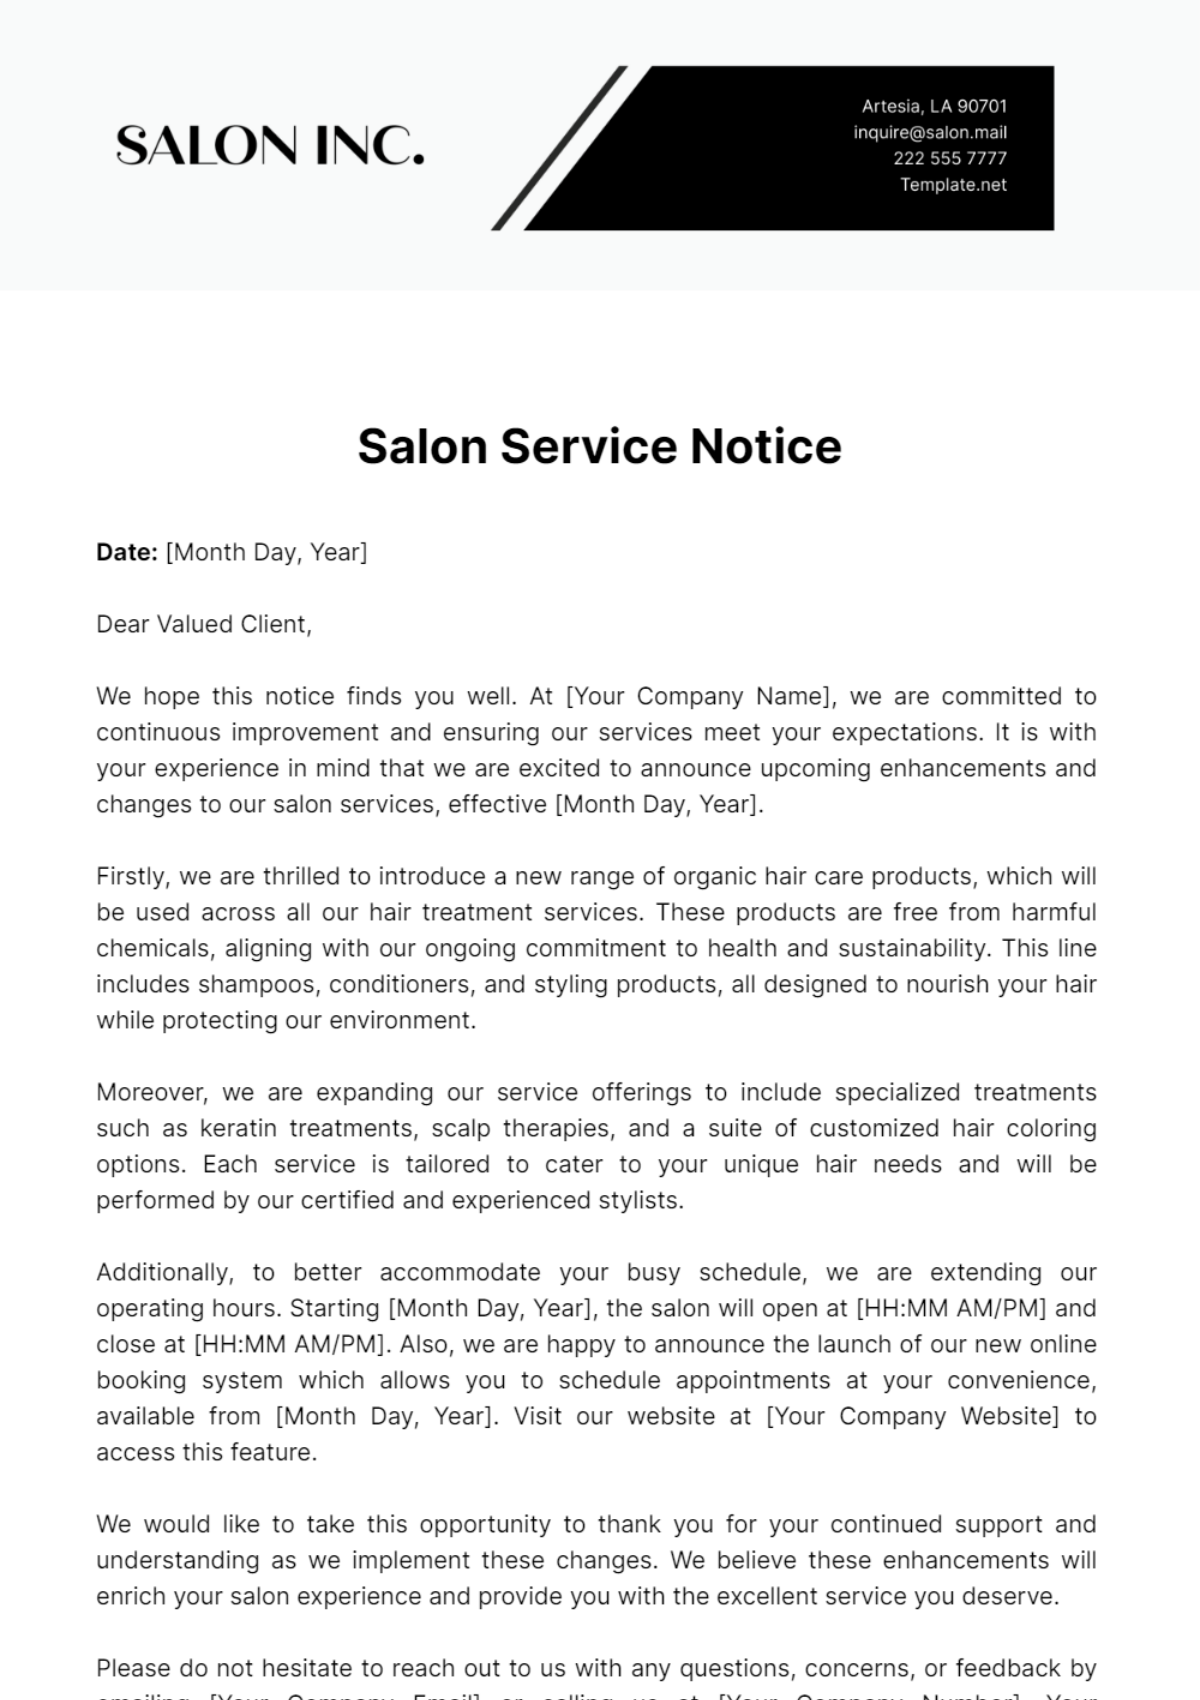 Salon Service Notice Template